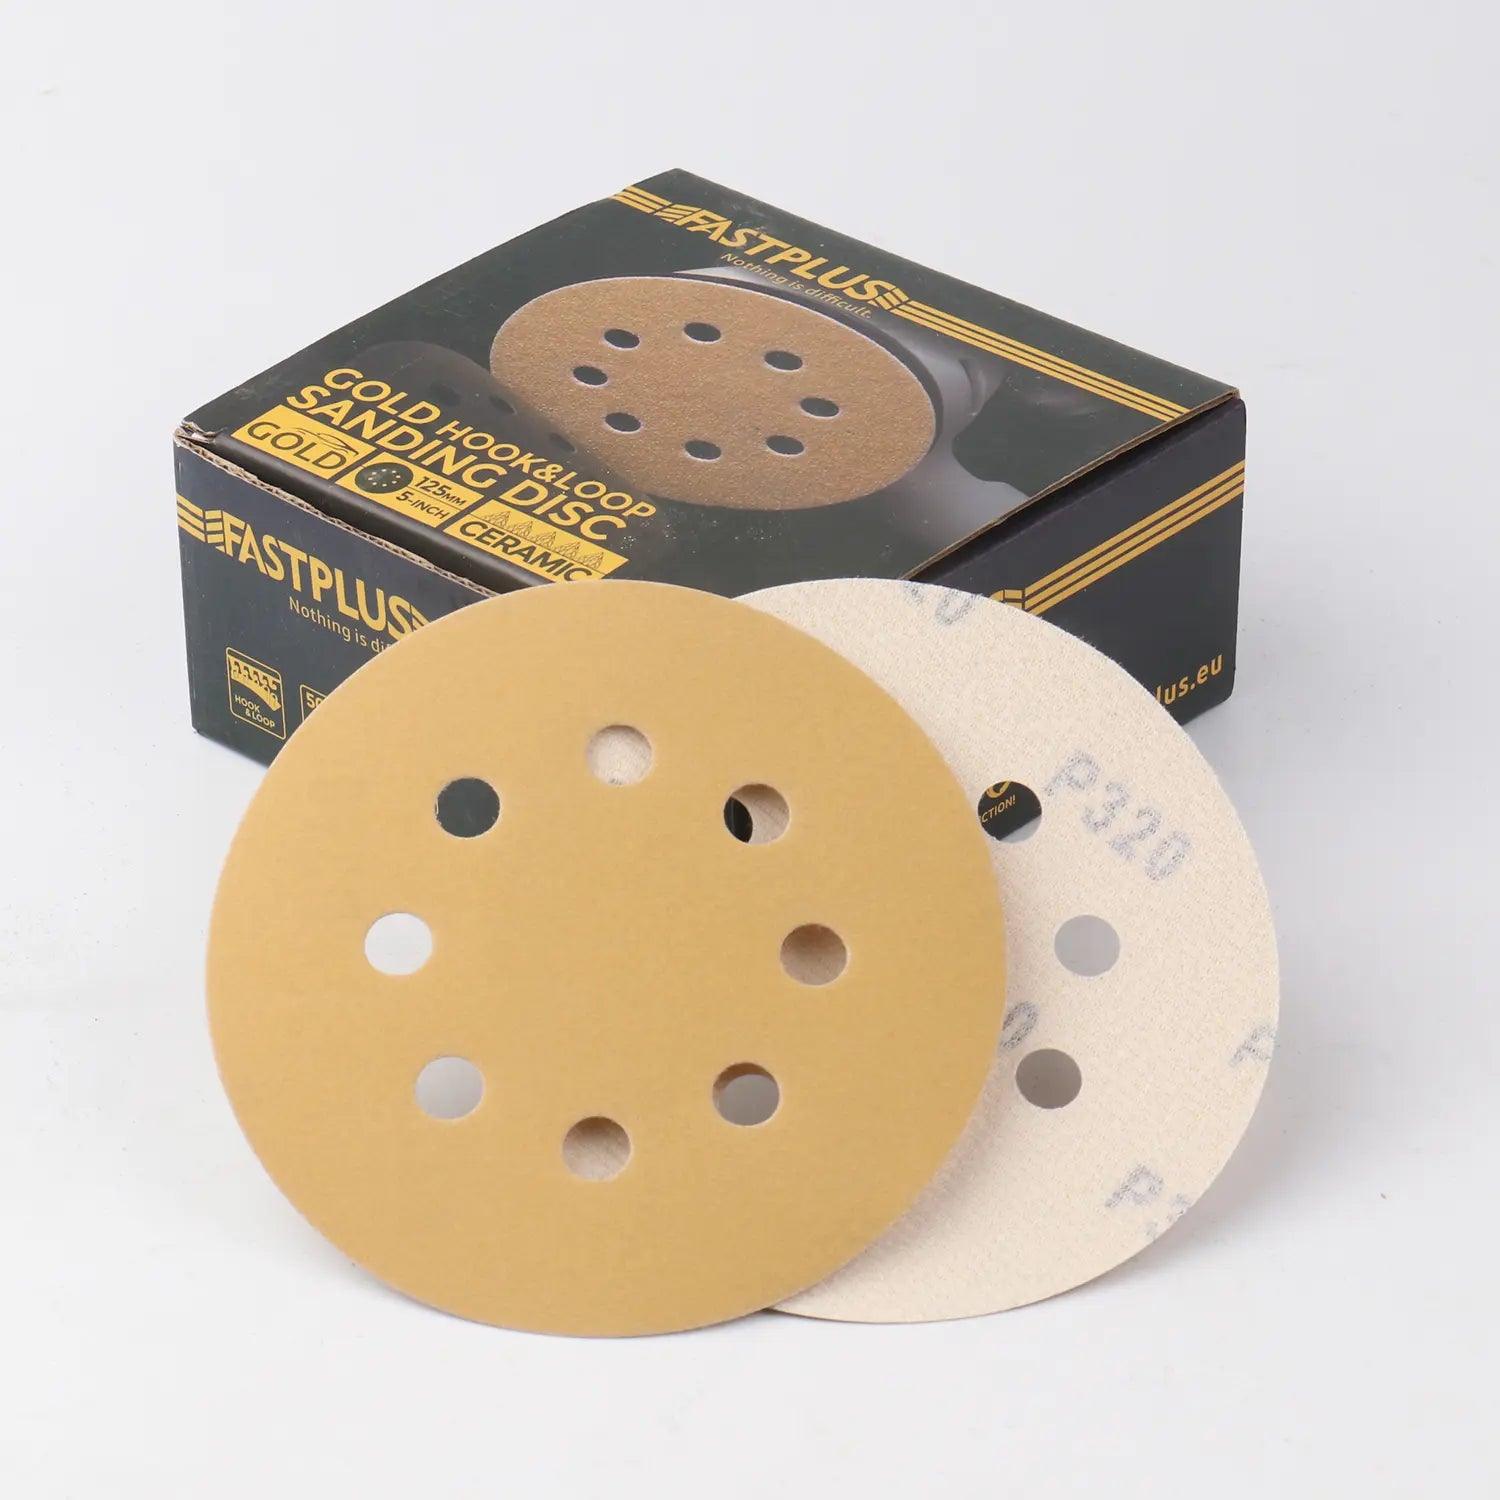 125mm Klett-schleifscheiben gold mirka f15 sanding discs fastplus P320